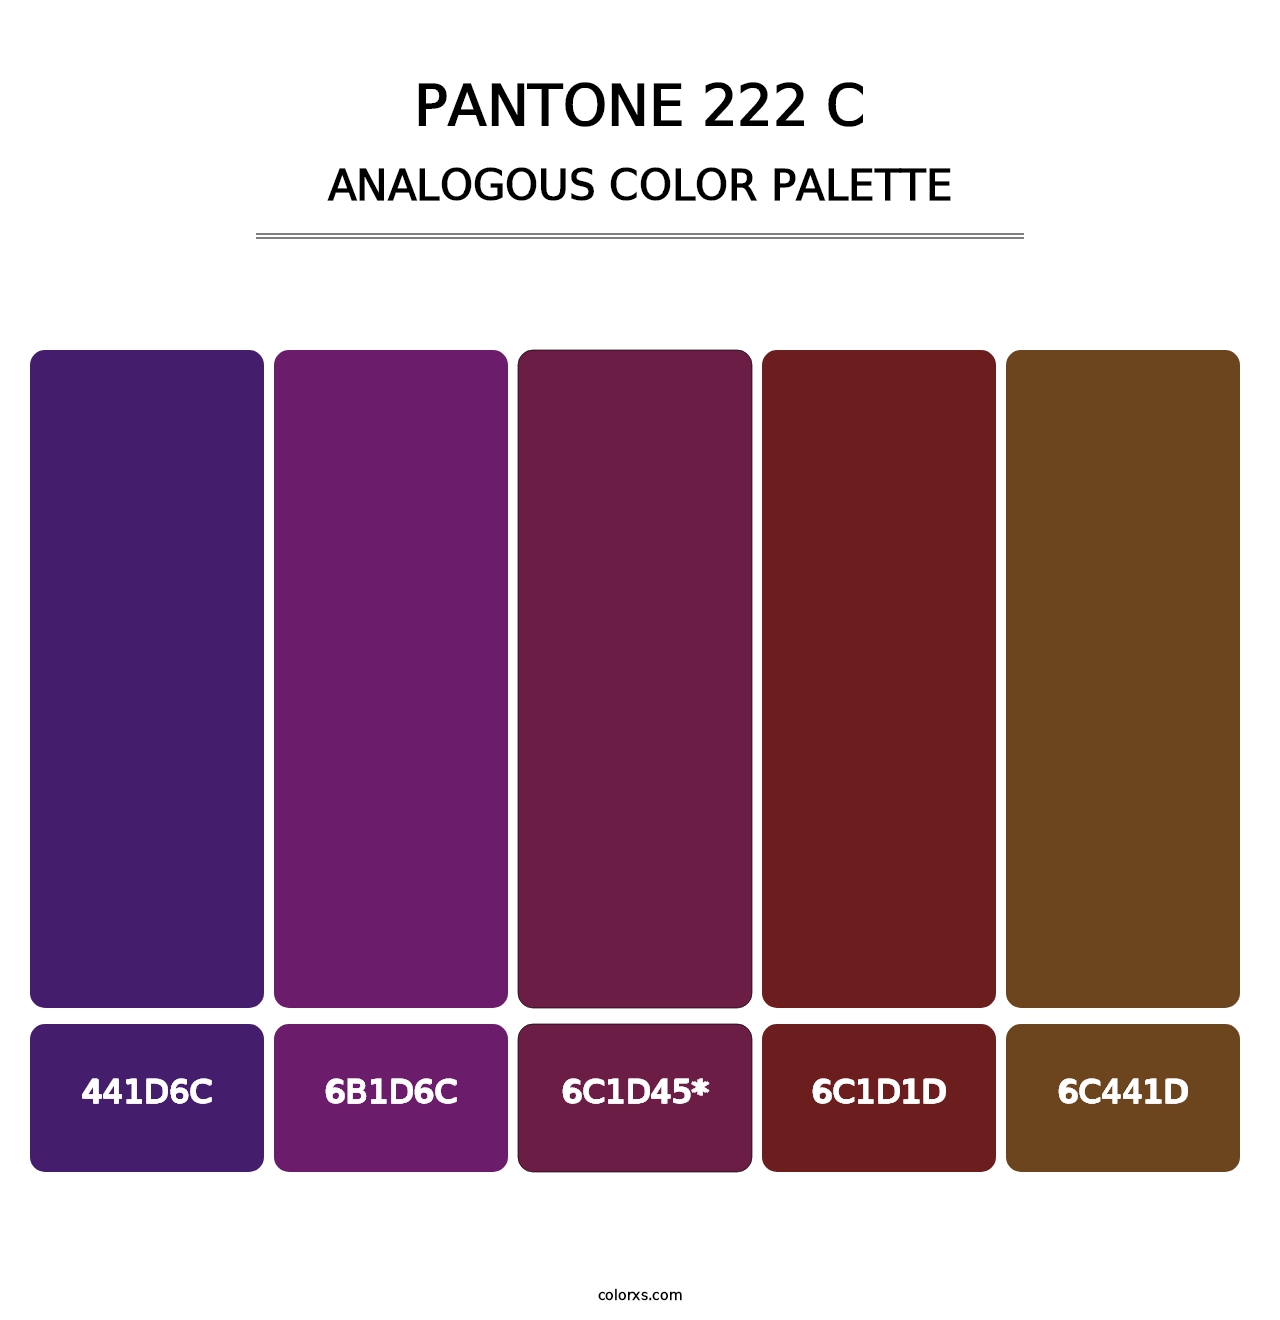 PANTONE 222 C - Analogous Color Palette